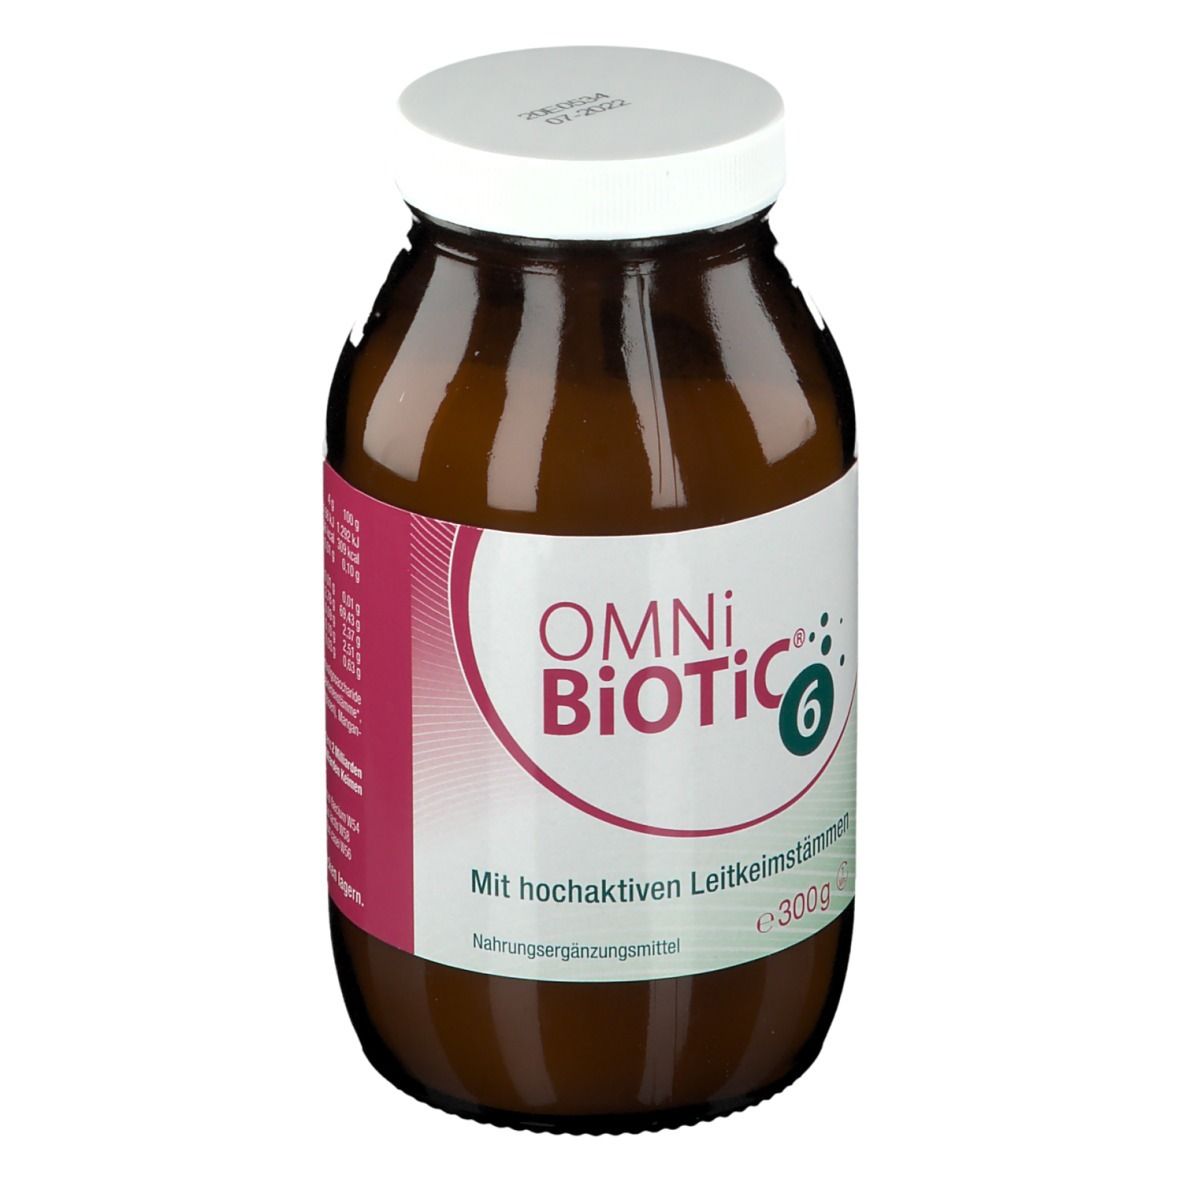 OMNi-BIOTIC® 6